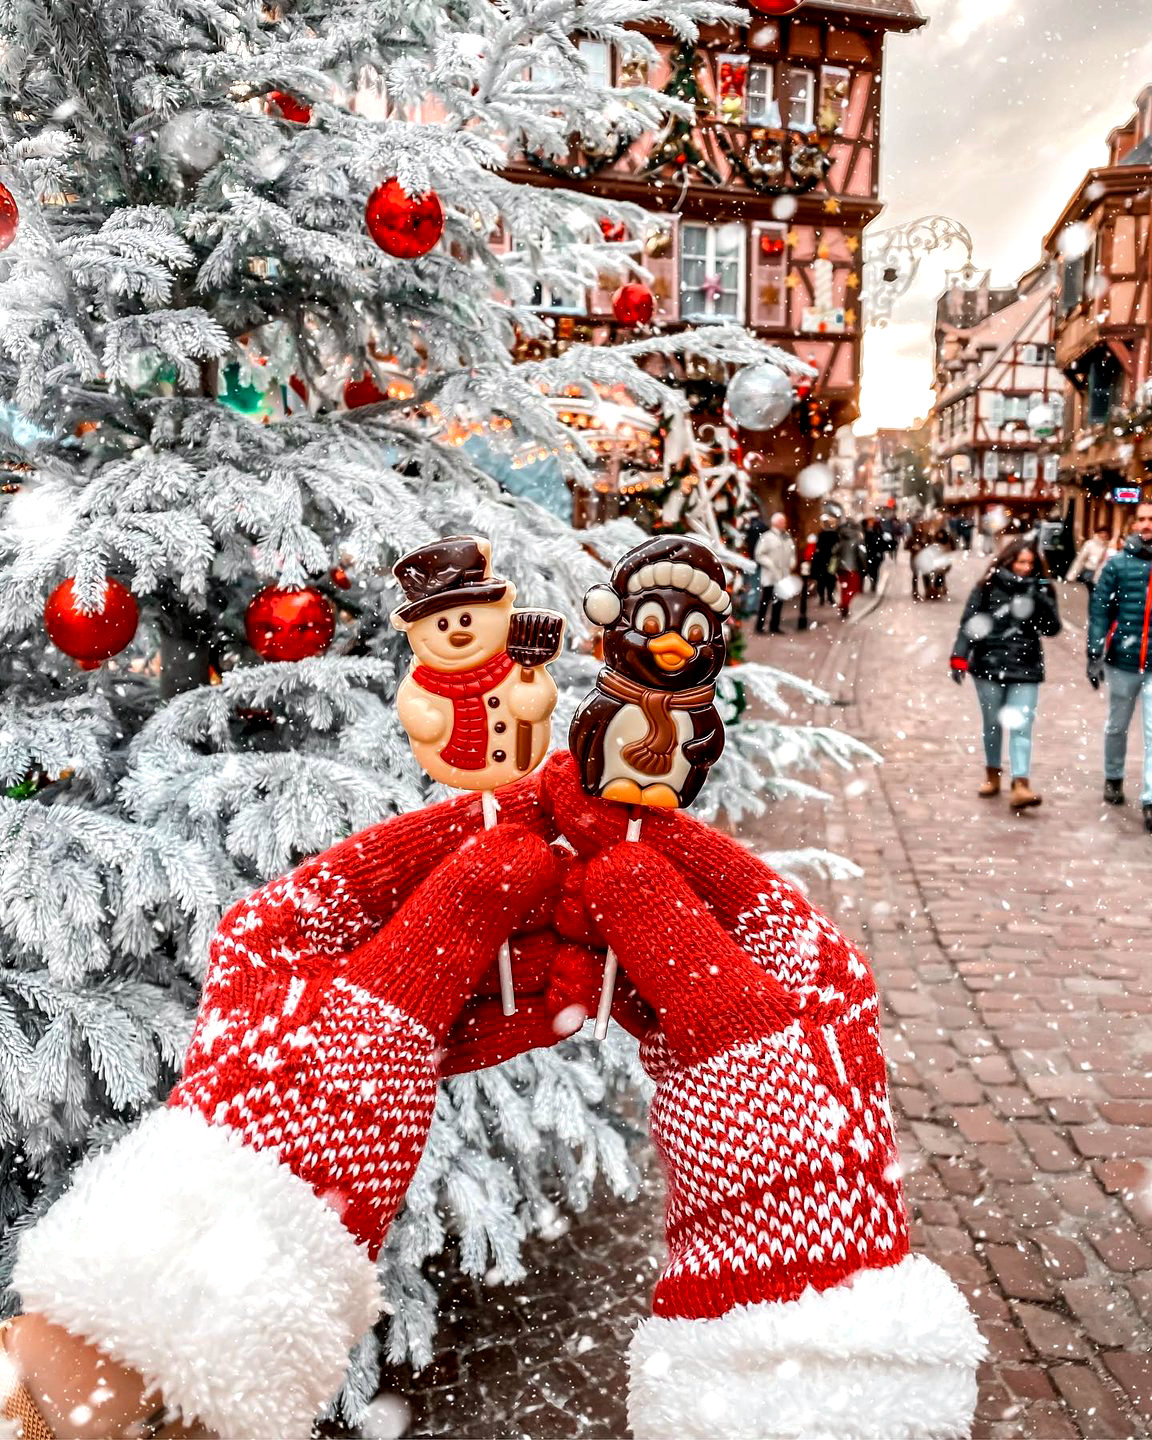 Рождественский базар в Кольмаре прекрасное место для красивых снимков для вашего Instagram